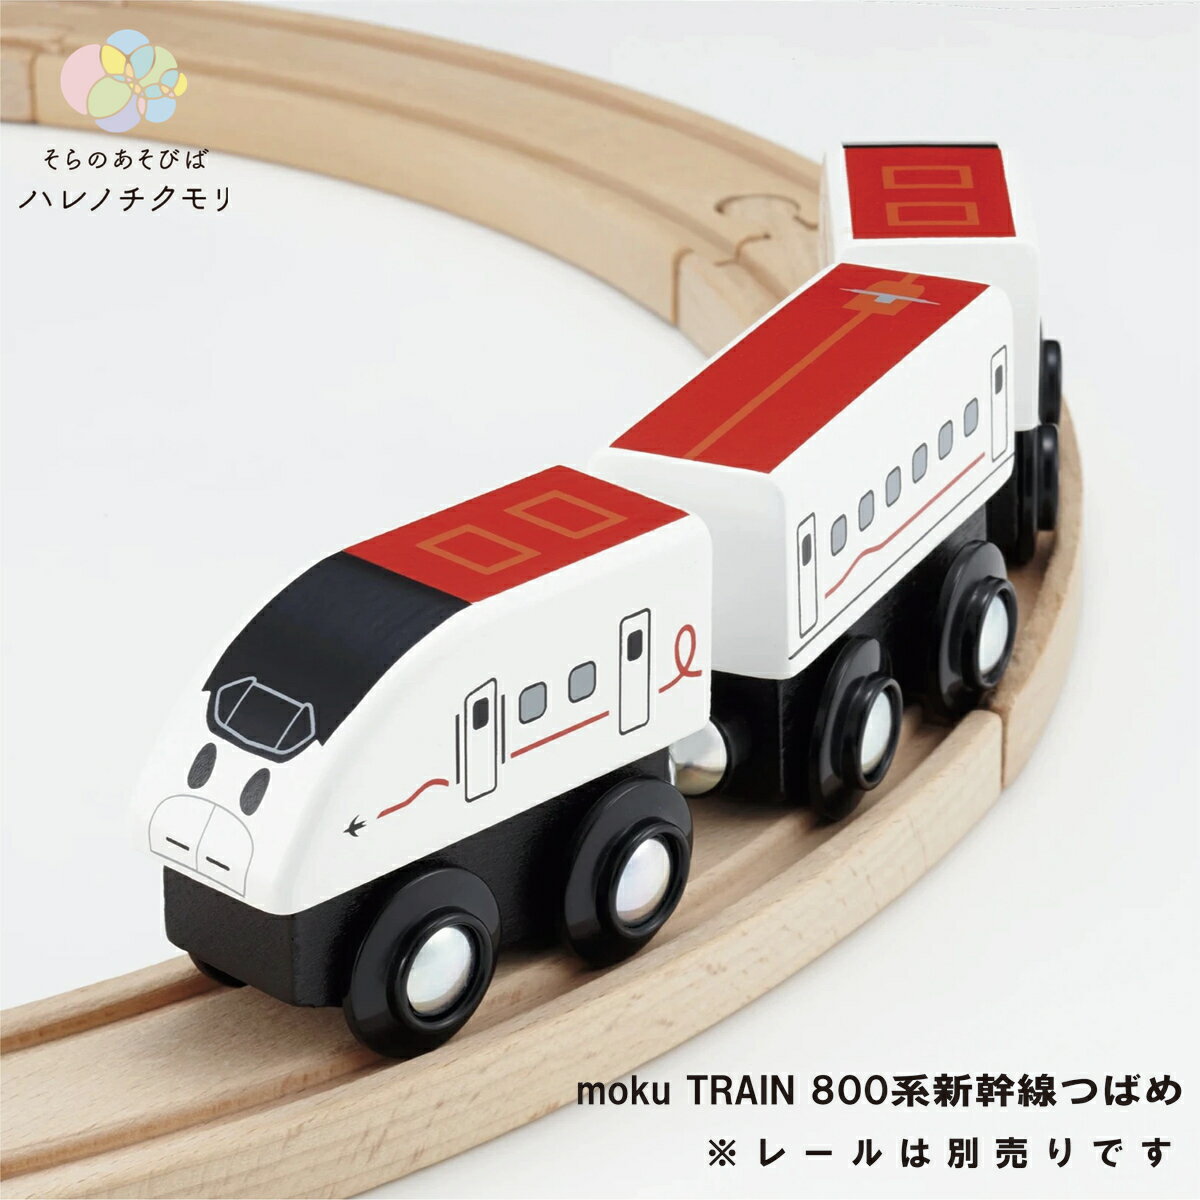 moku TRAIN 800系新幹線つばめ モクトレイン ポポンデッタ 電車 木 おもちゃ 誕生日プレゼント 車両